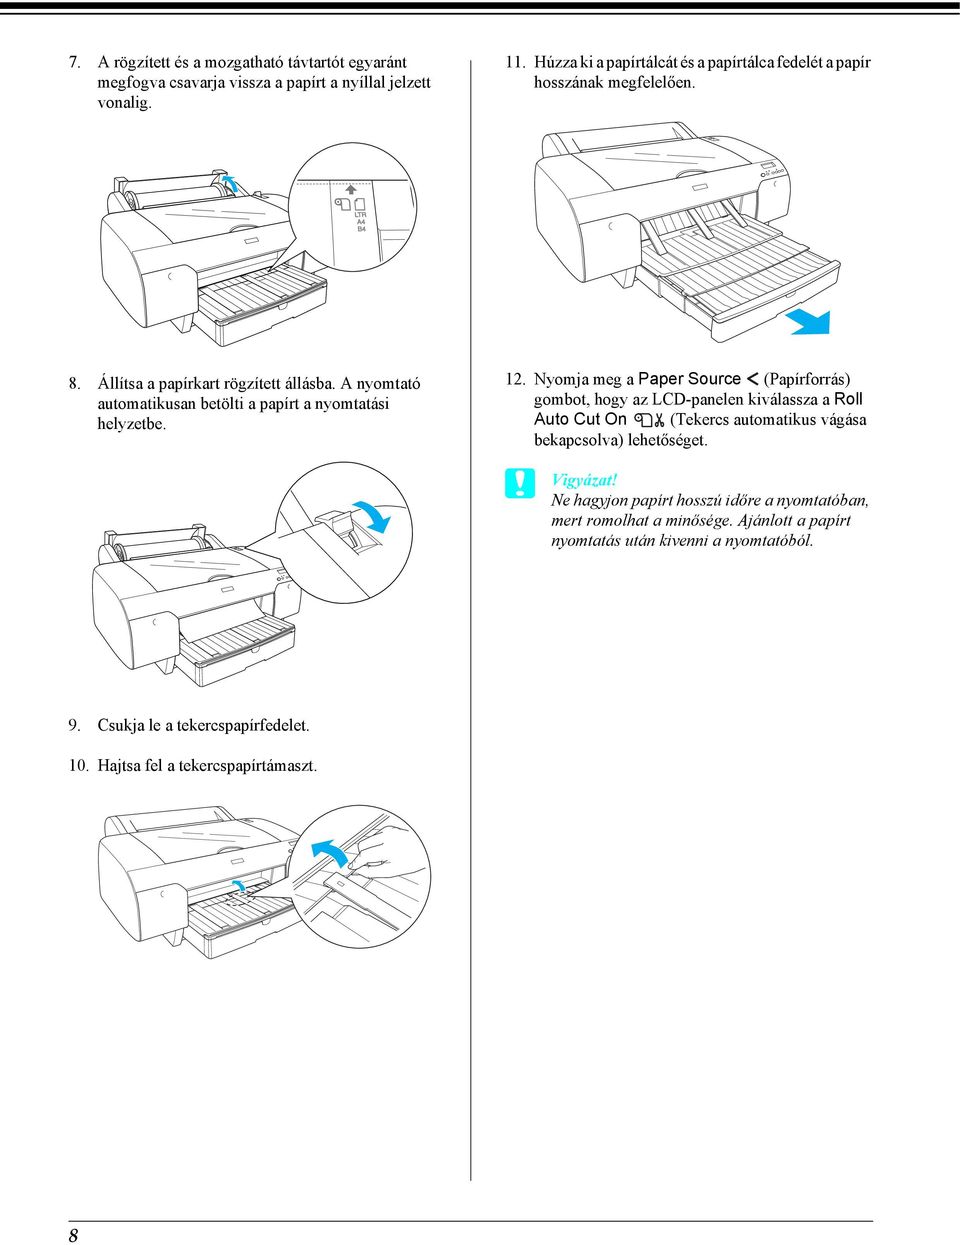 A nyomtató automatikusan betölti a papírt a nyomtatási helyzetbe. 12.